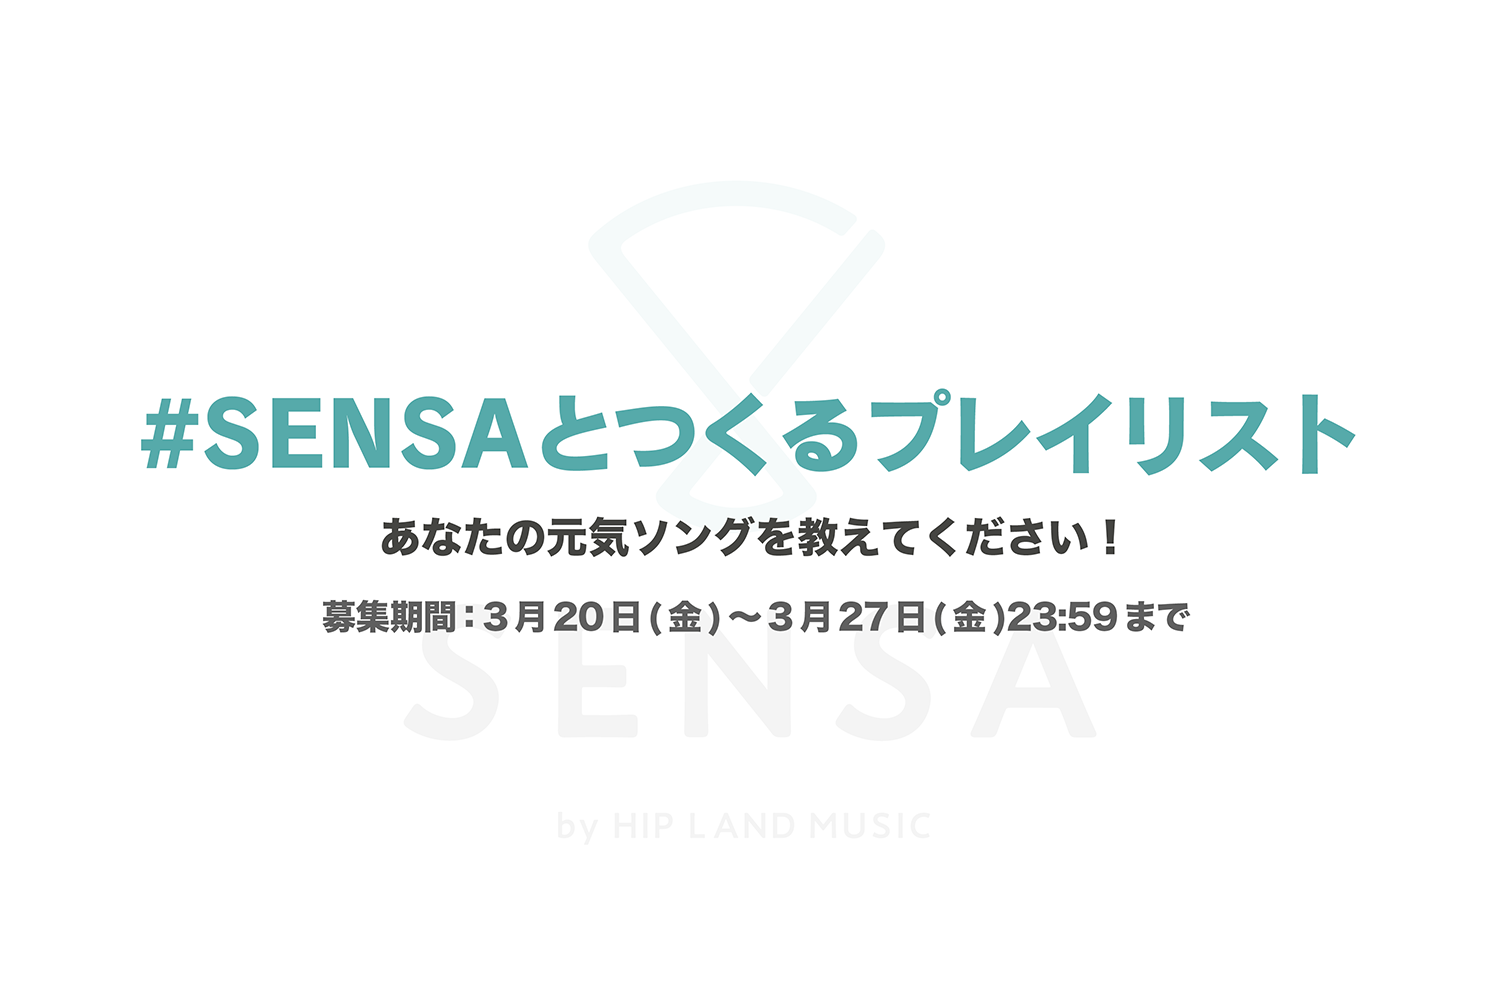 あなたの元気ソングを教えてください！SENSA PLAYLIST企画「#SENSAとつくるプレイリスト」スタート！